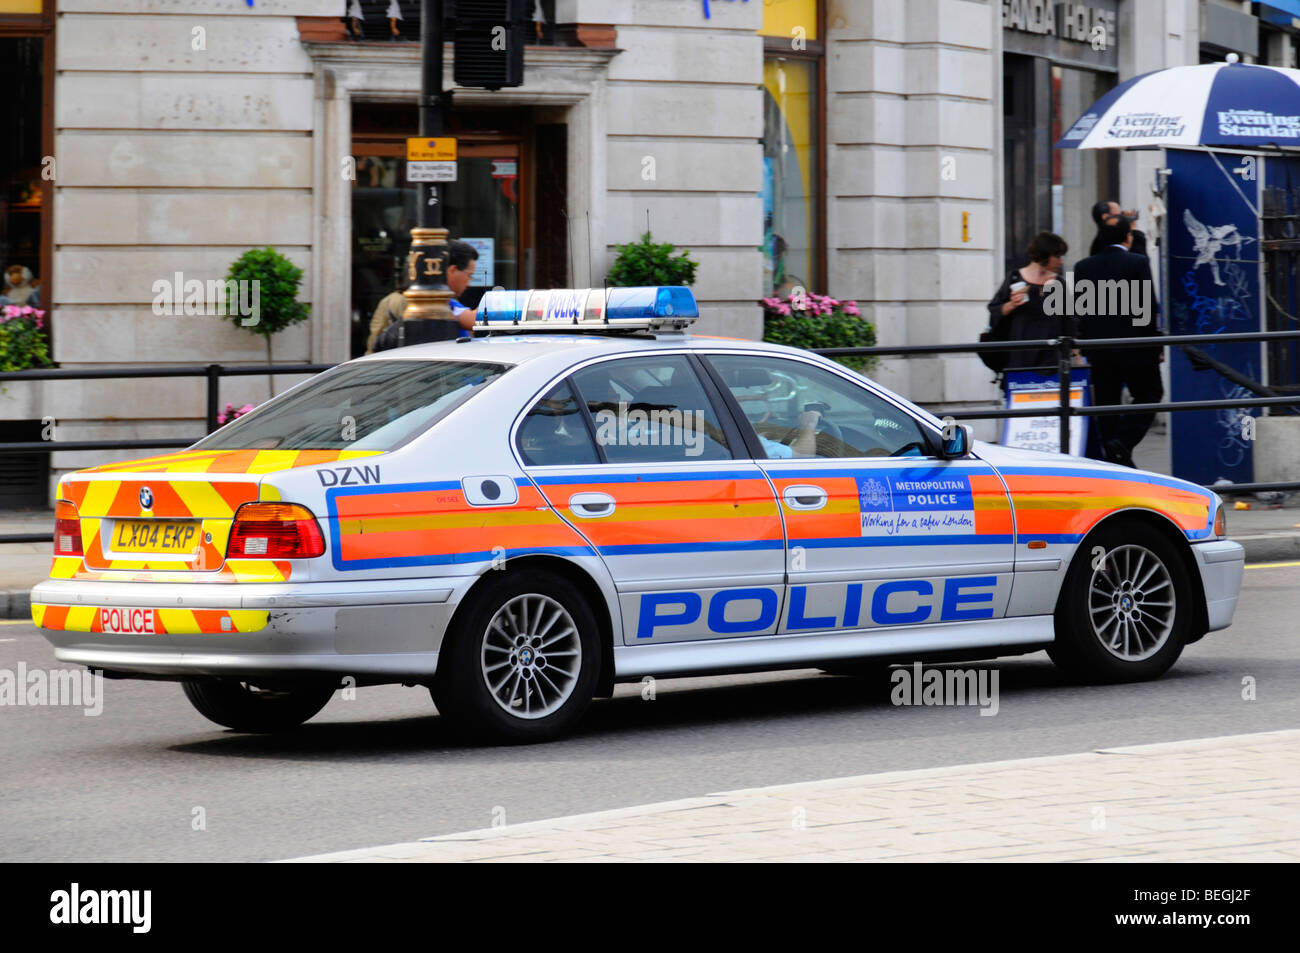 Police car at speed in Trafalgar Square Stock Photo